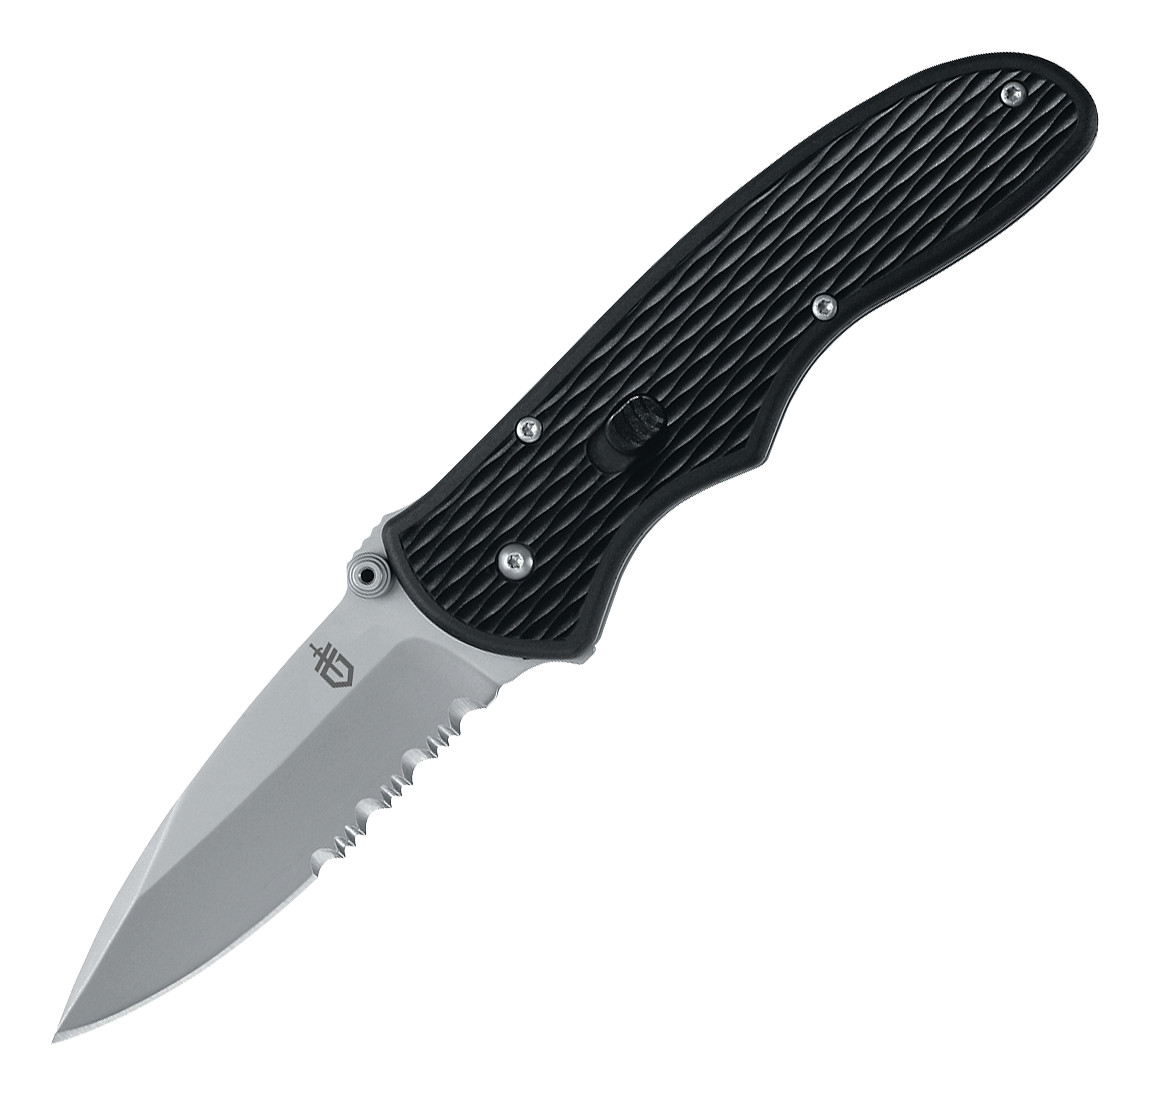 Gerber Fast Draw Serrated Edge Folding Knife